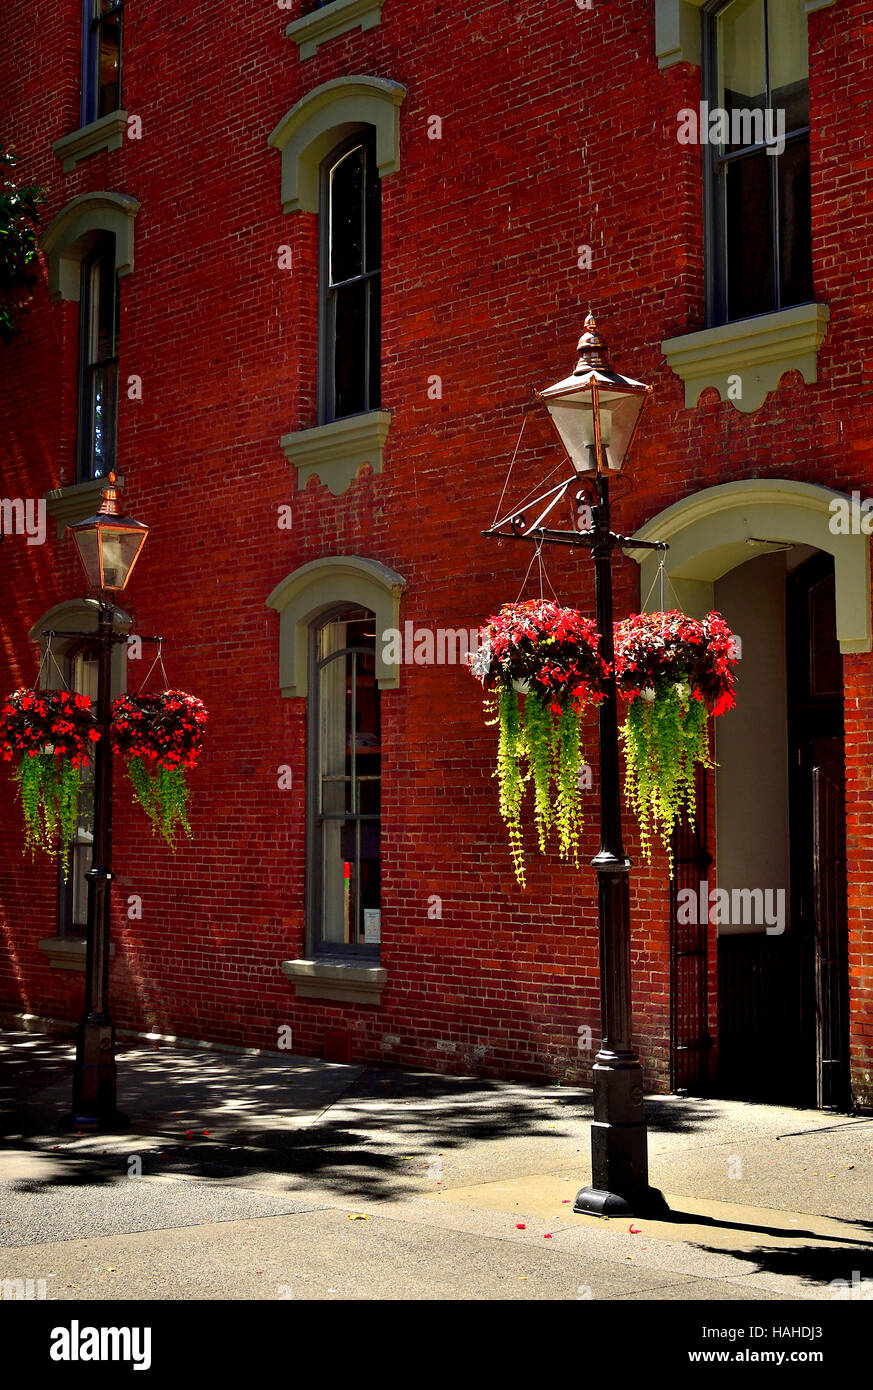 Las luces de la calle con cestas de flores en frente de un edificio de ladrillo Foto de stock